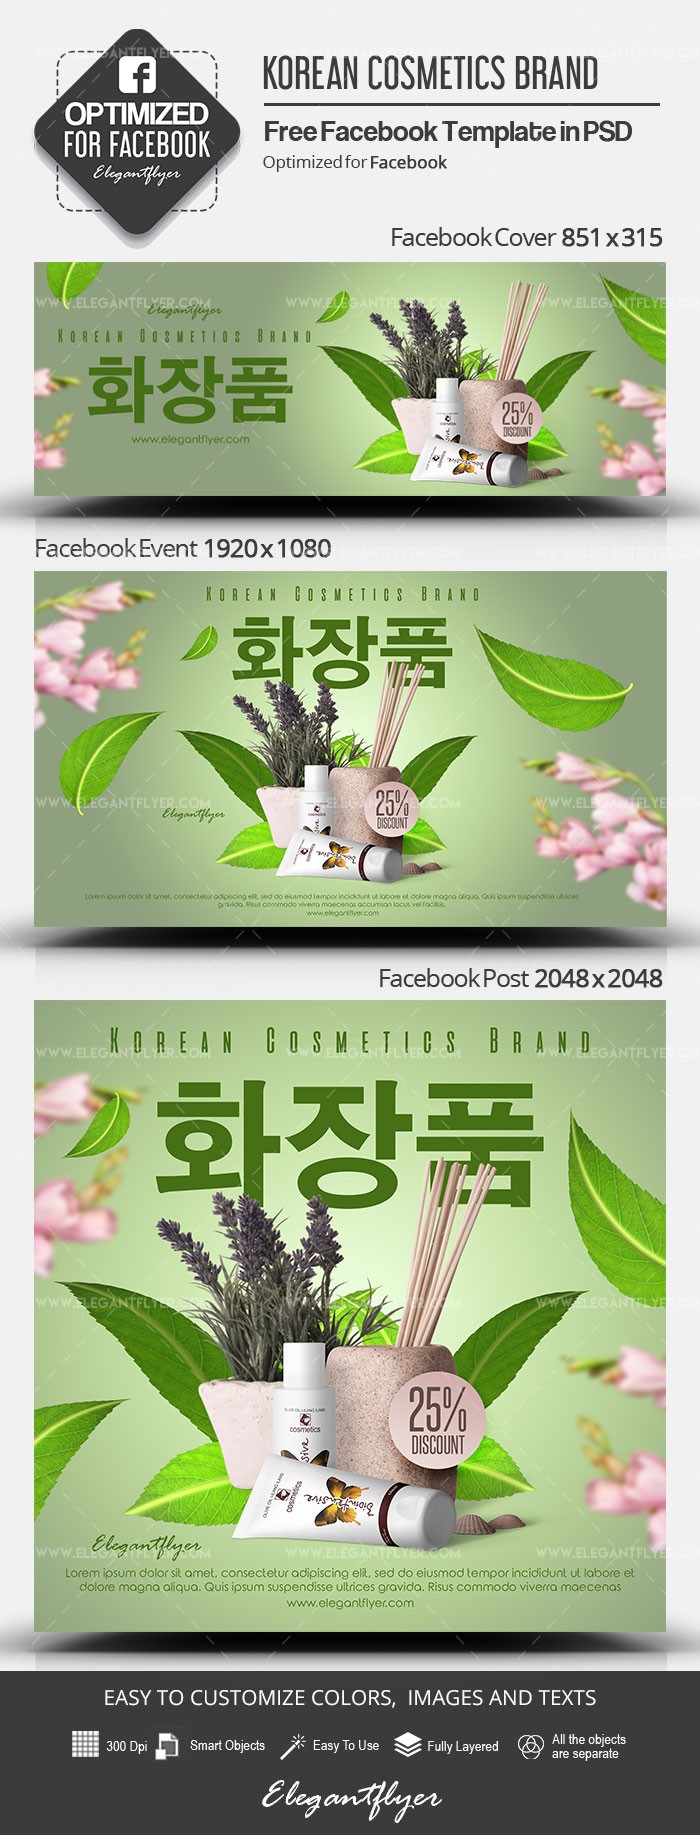 Marque coréenne de cosmétiques sur Facebook by ElegantFlyer